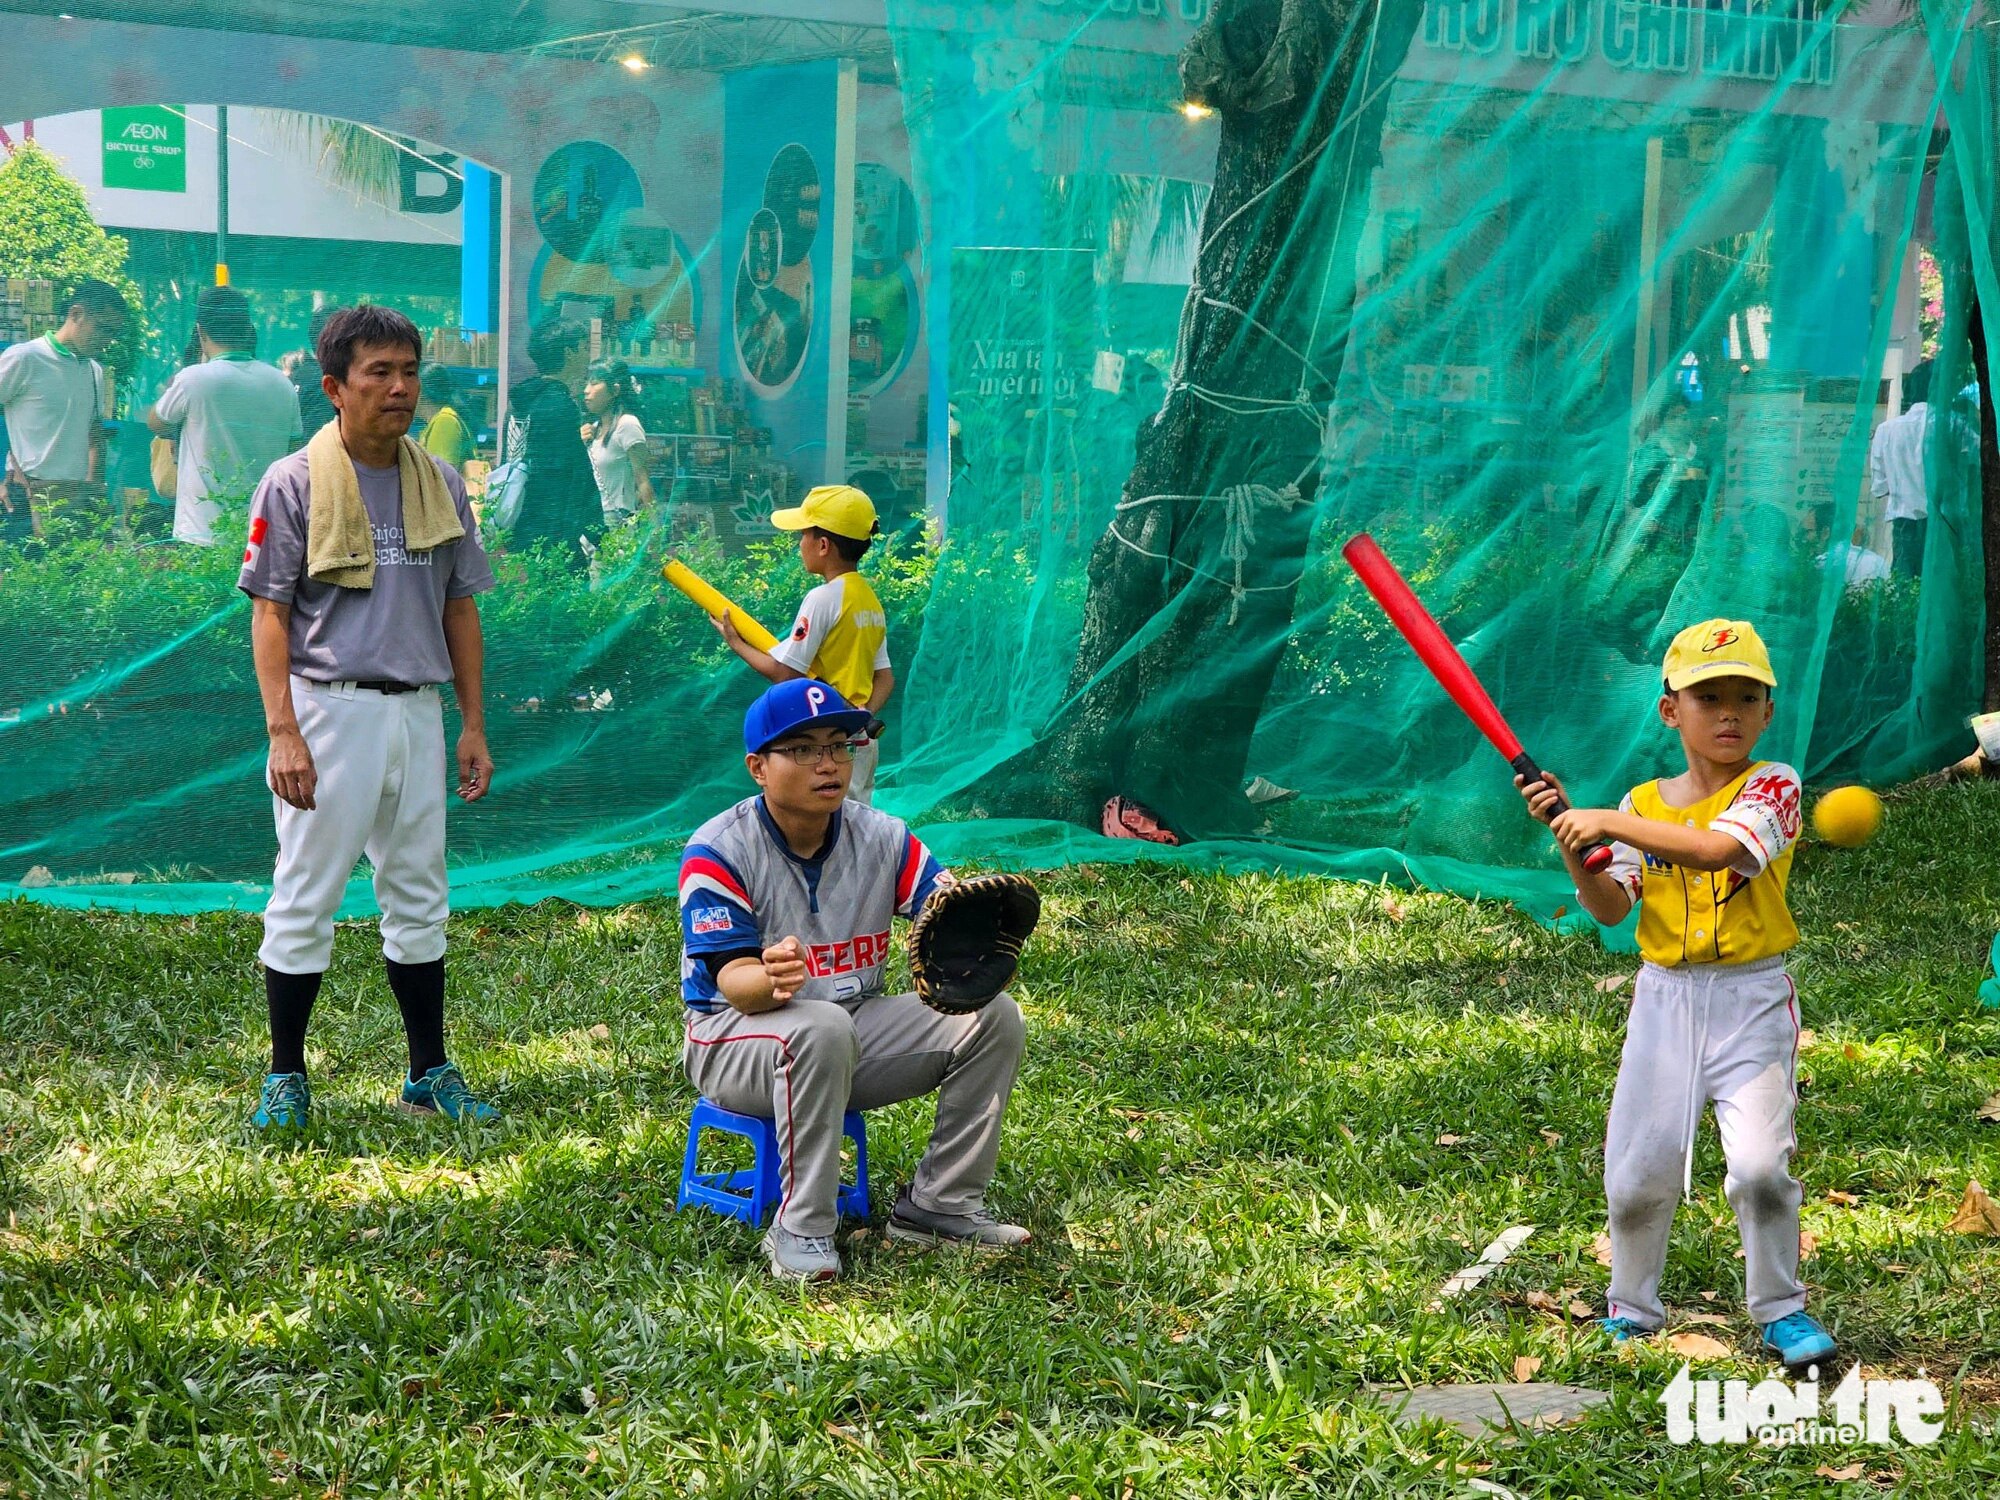 Trẻ em trải nghiệm bộ môn bóng chày rất được người Nhật Bản yêu thích tại lễ hội 